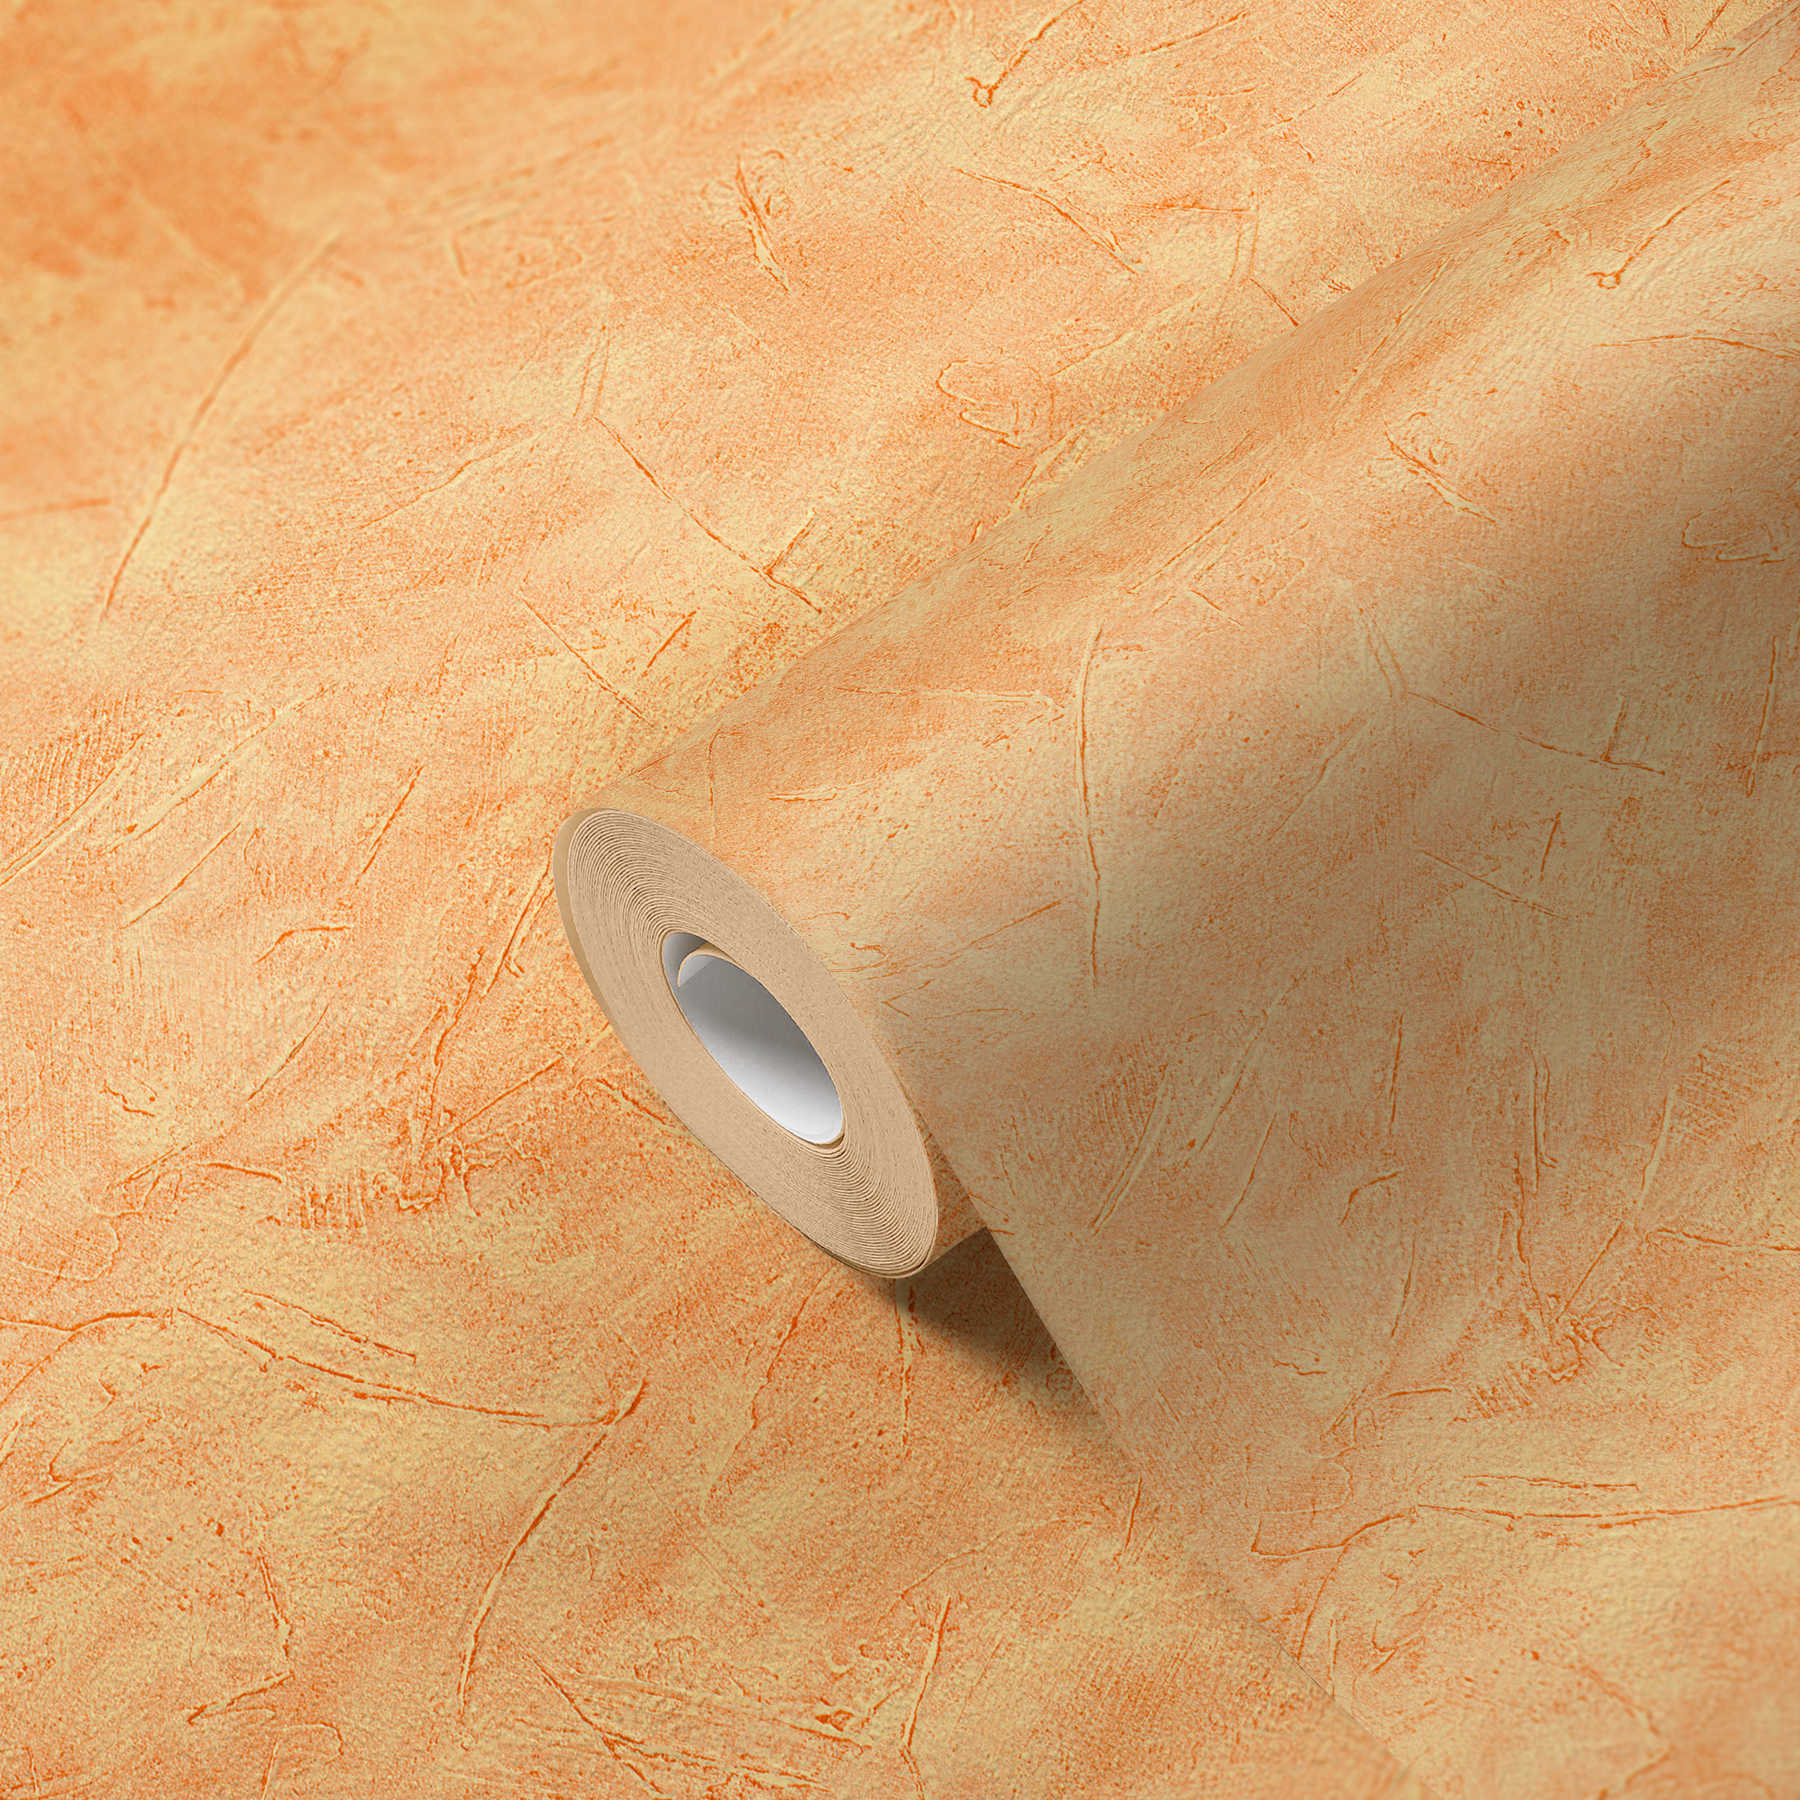             Papel Pintado Óptica de Yeso con Óptica de Barrido y Patrón de Trama - Naranja
        